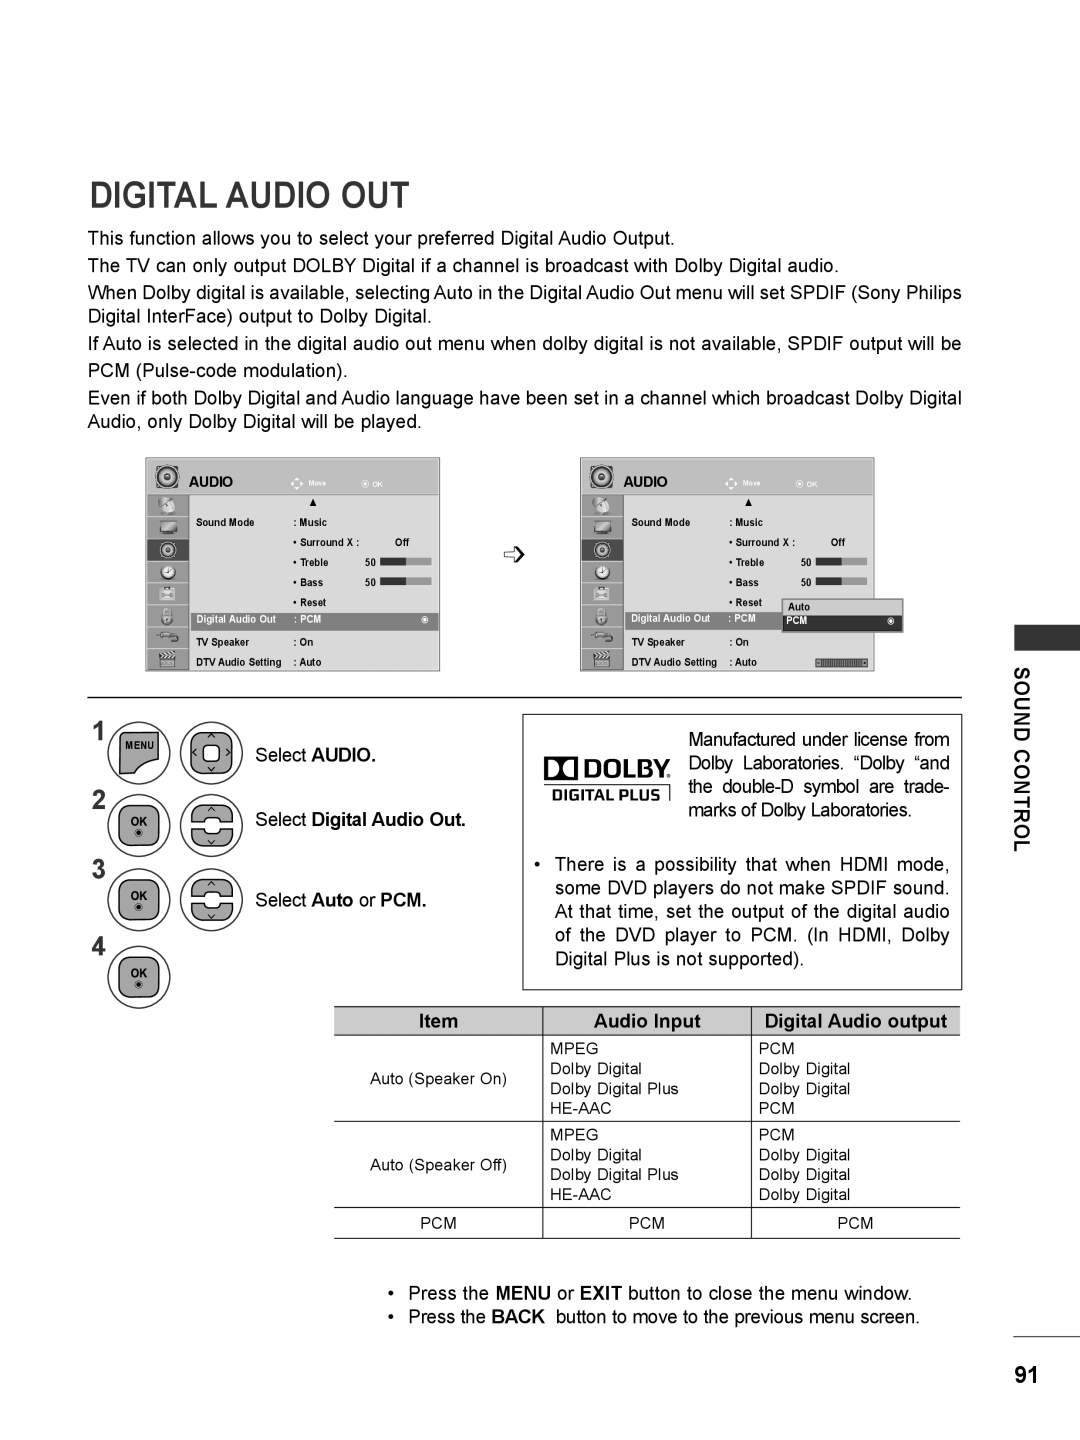 LG Electronics M2780DN, M2780DF, M2380DN, M2380DB, M2380DF Select Digital Audio Out, Audio Input, Digital Audio output 